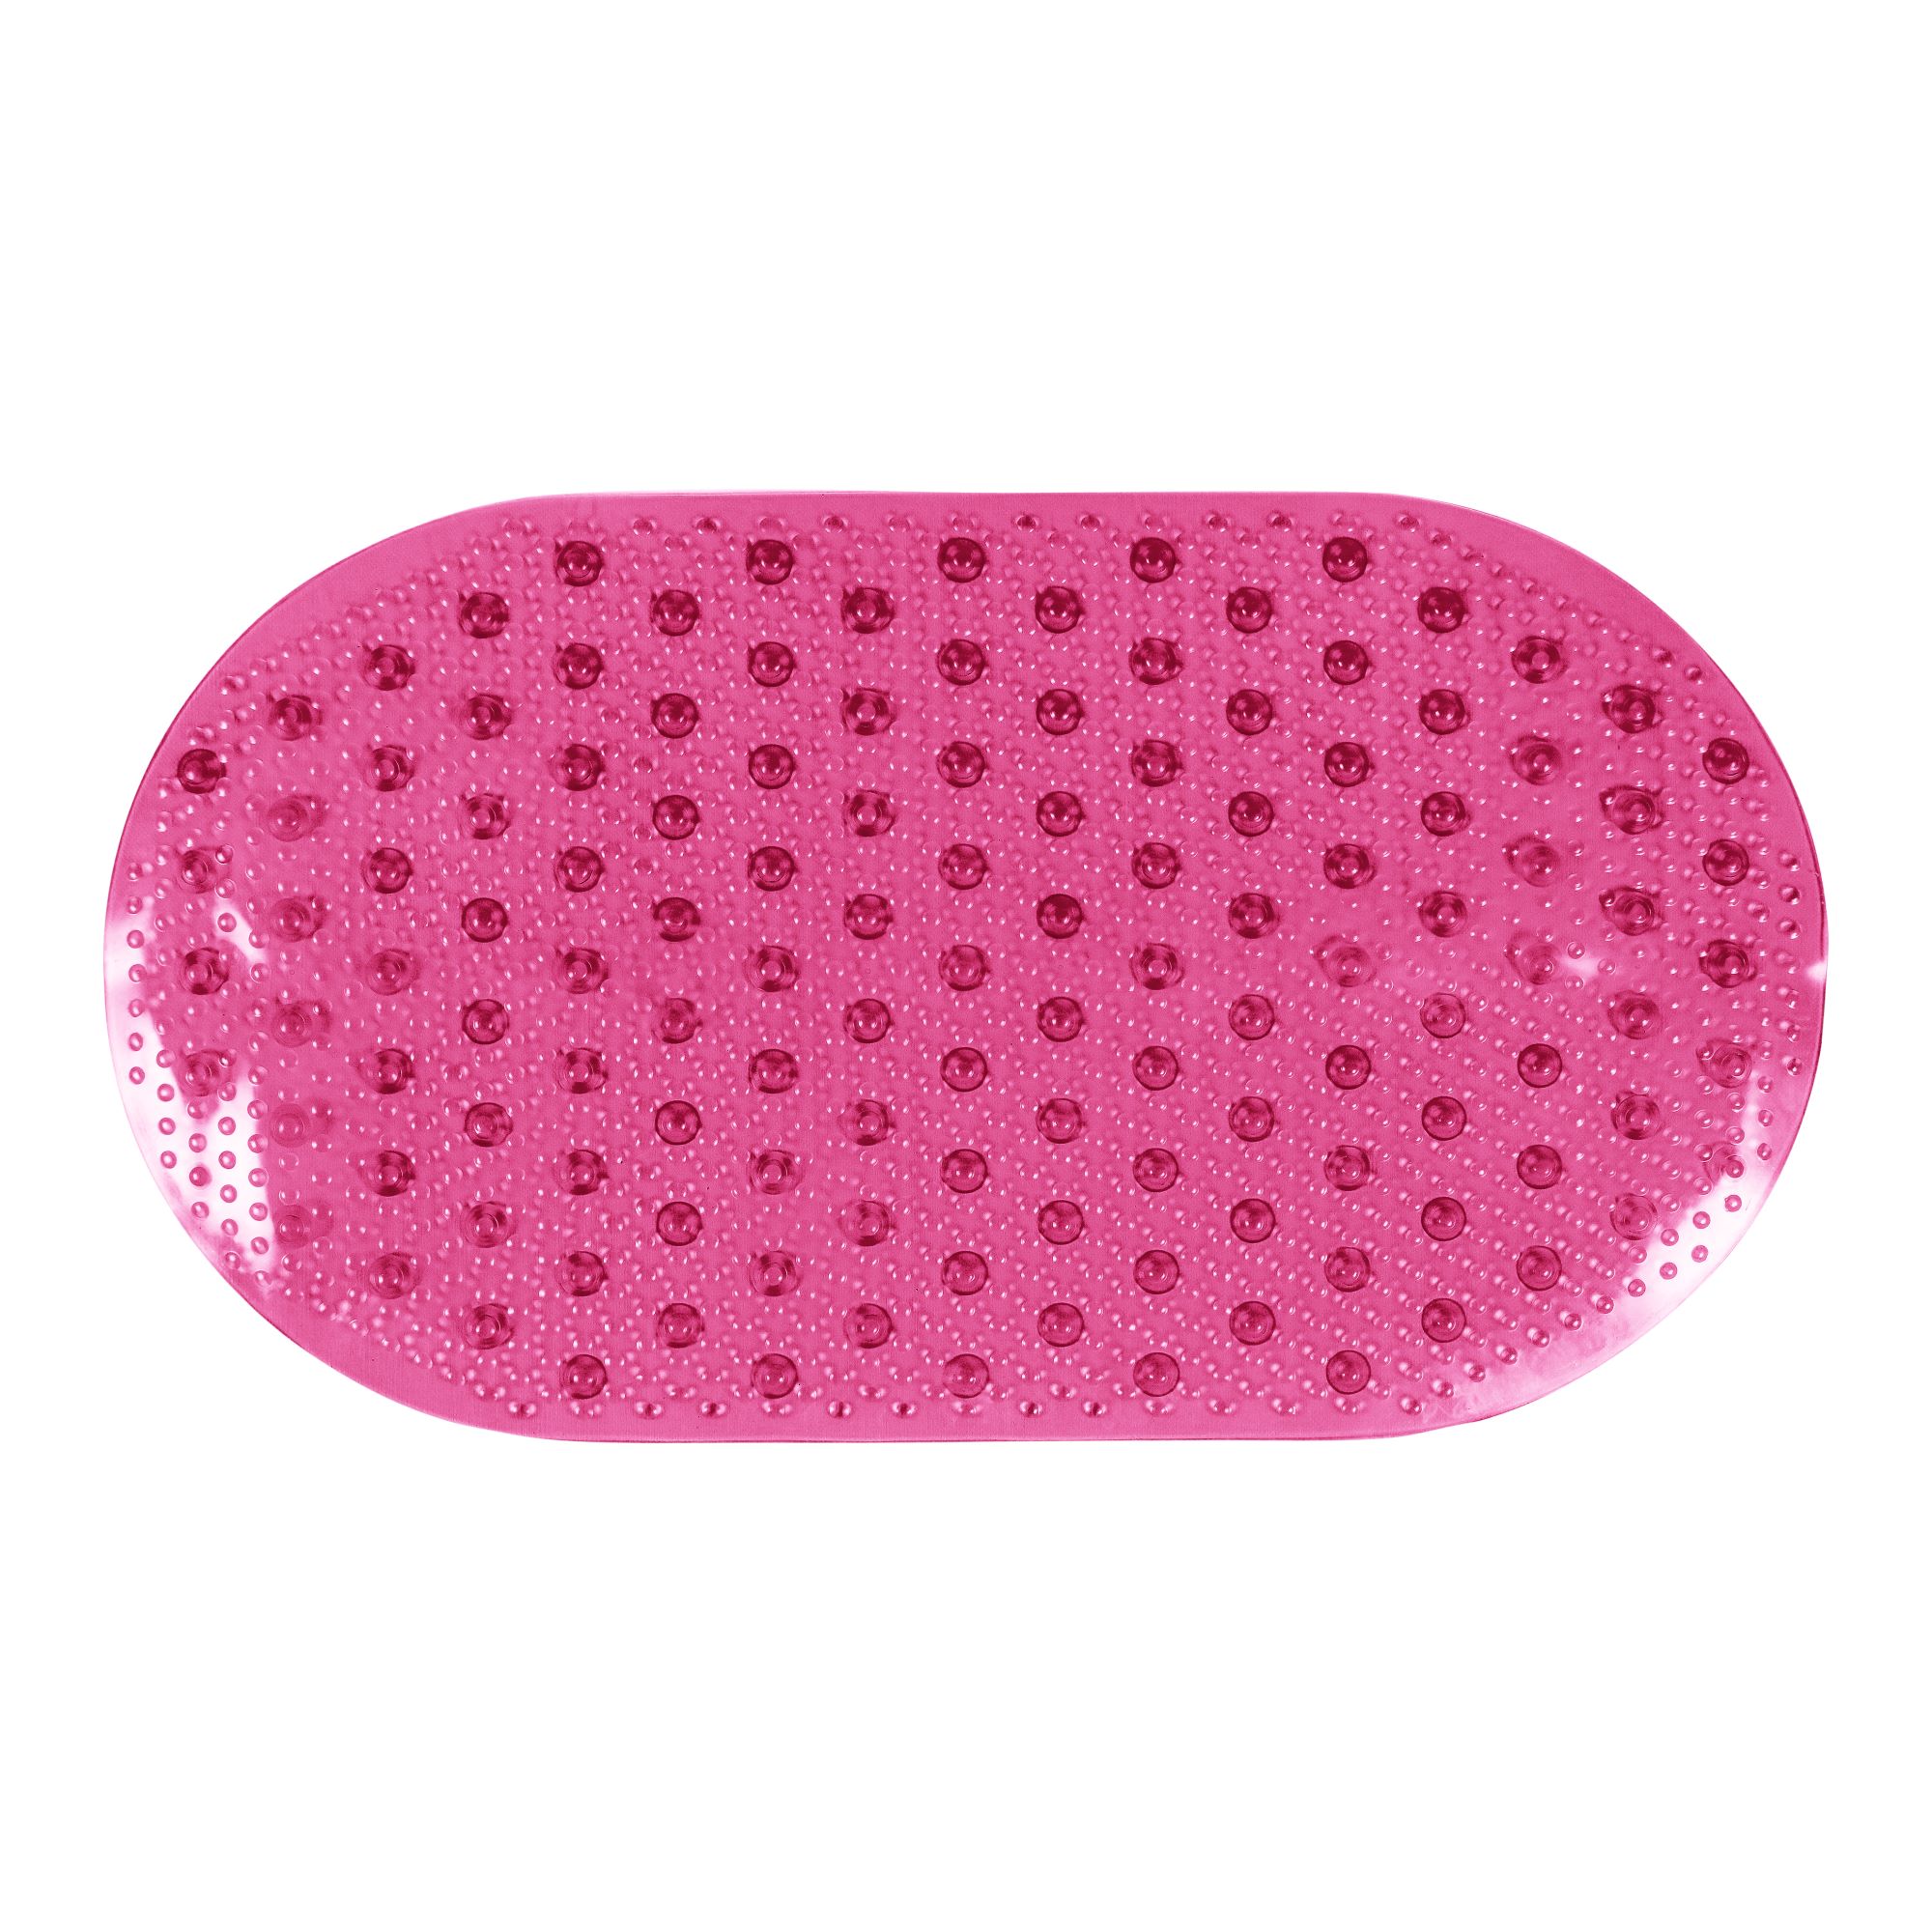 Коврик FOVERO для ванной SPA прозрачный Горошек 67х36см розовый - фото 2